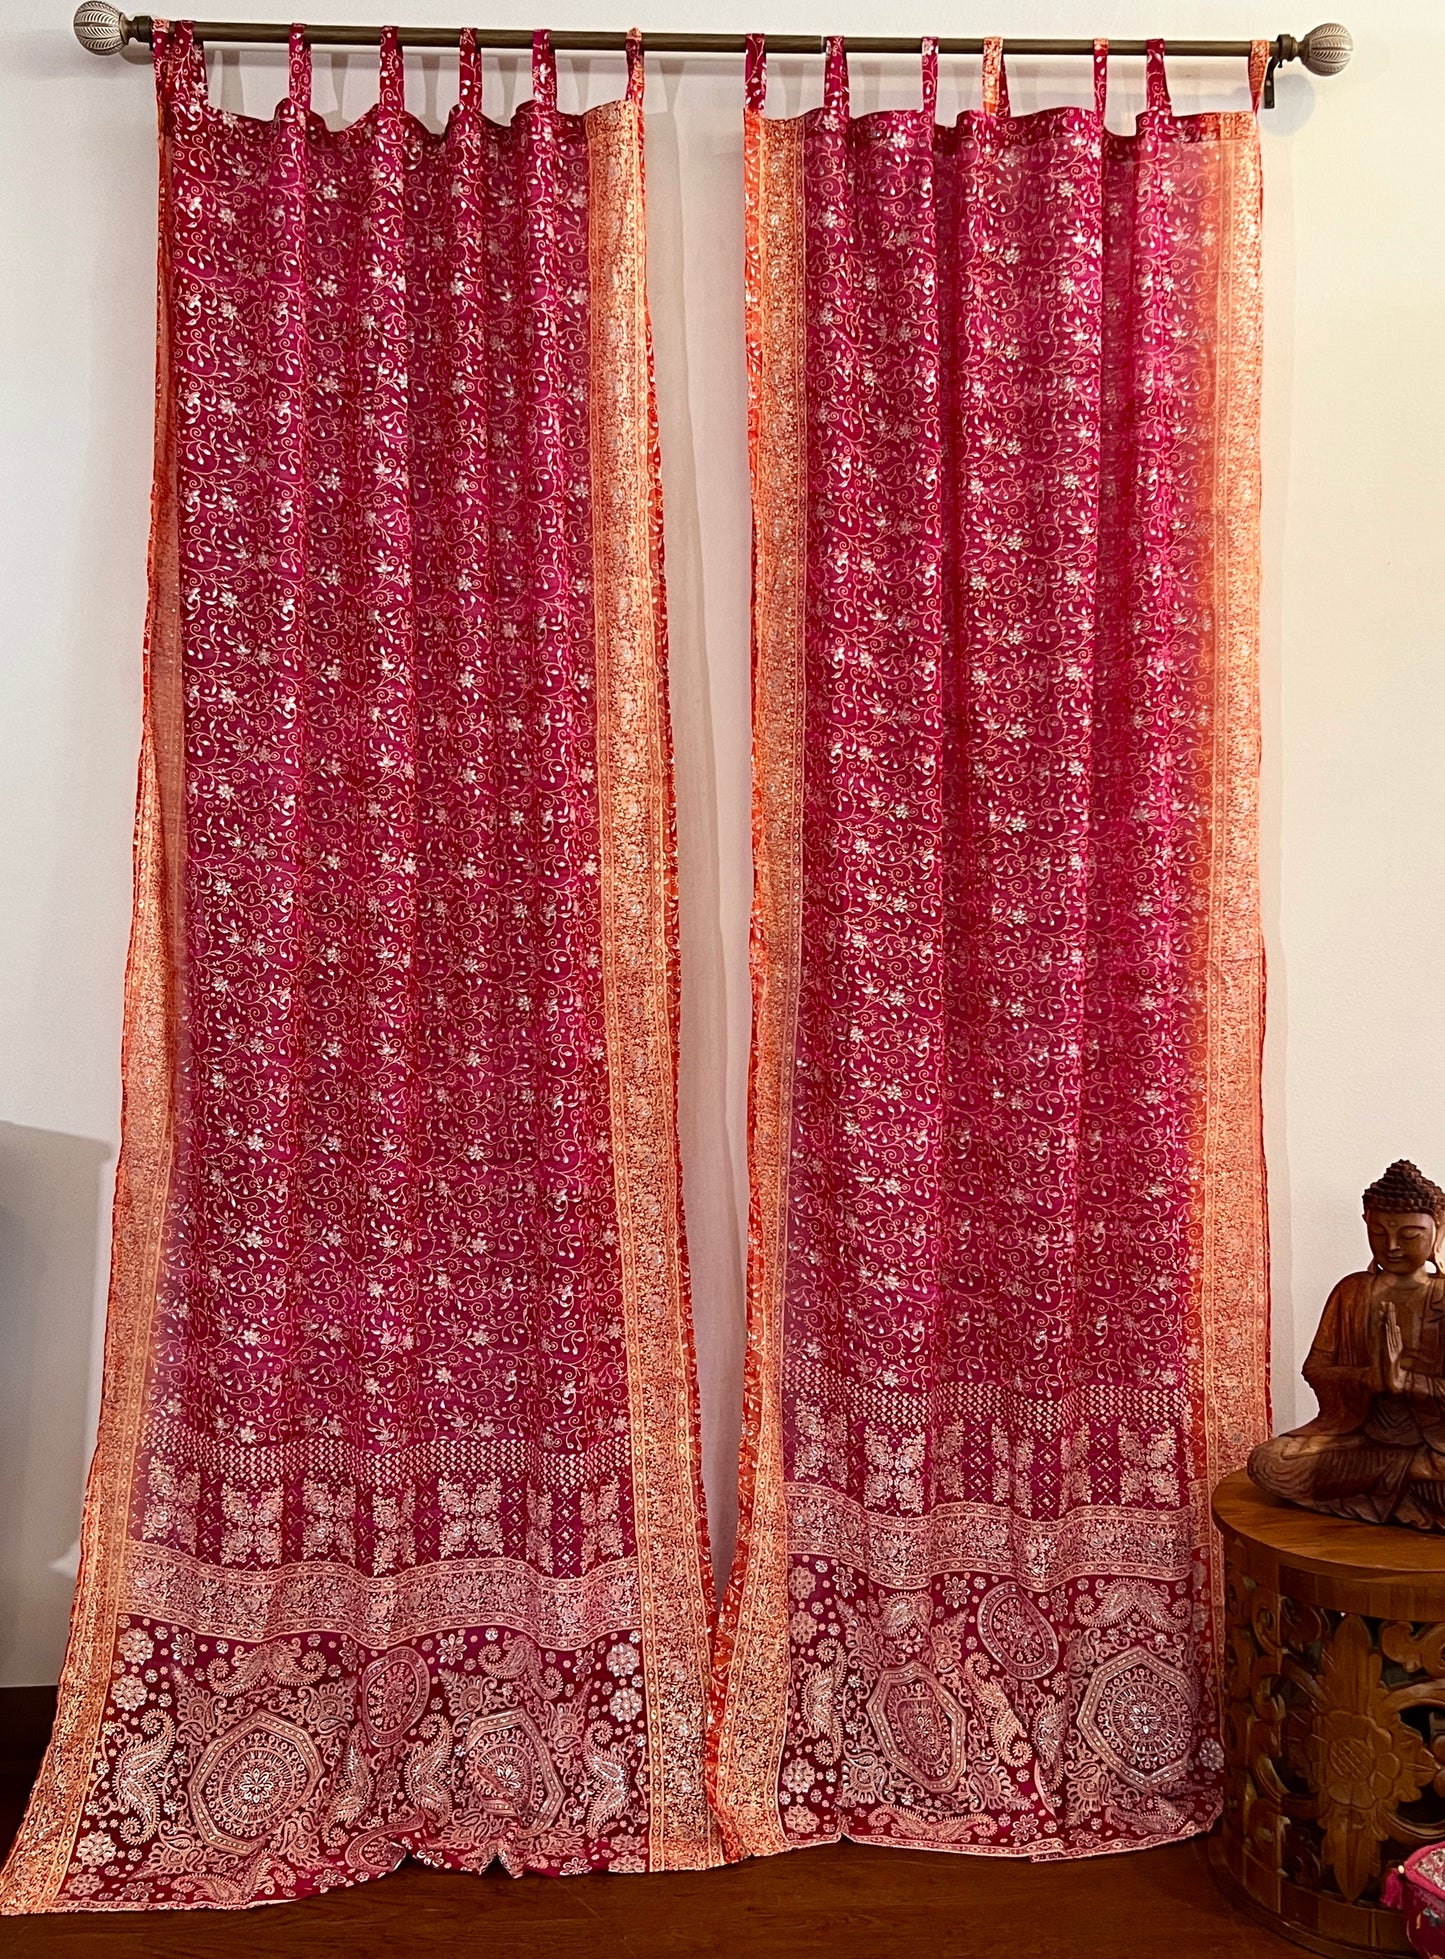 Red & Orange Sari Curtain Panels